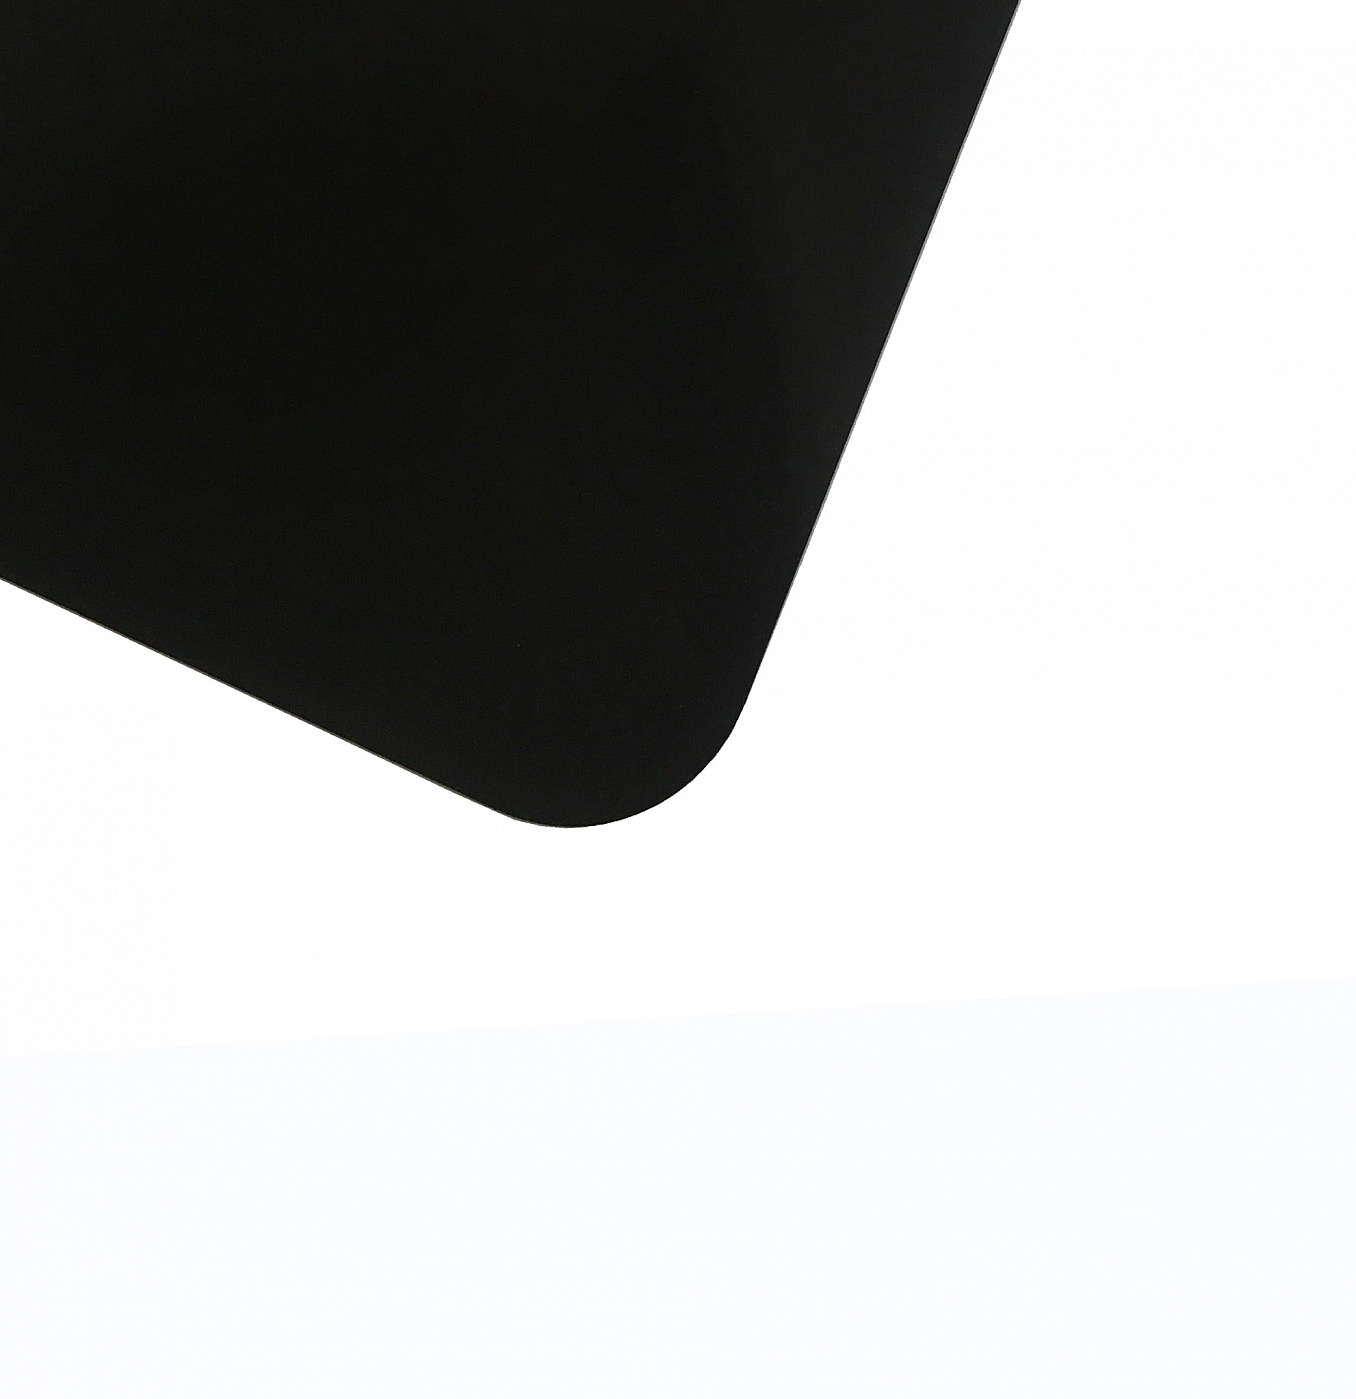 Планшет для пленэра из оргстекла 3 мм, под лист размера А3, цвет черный Dec-9082025 - фото 1